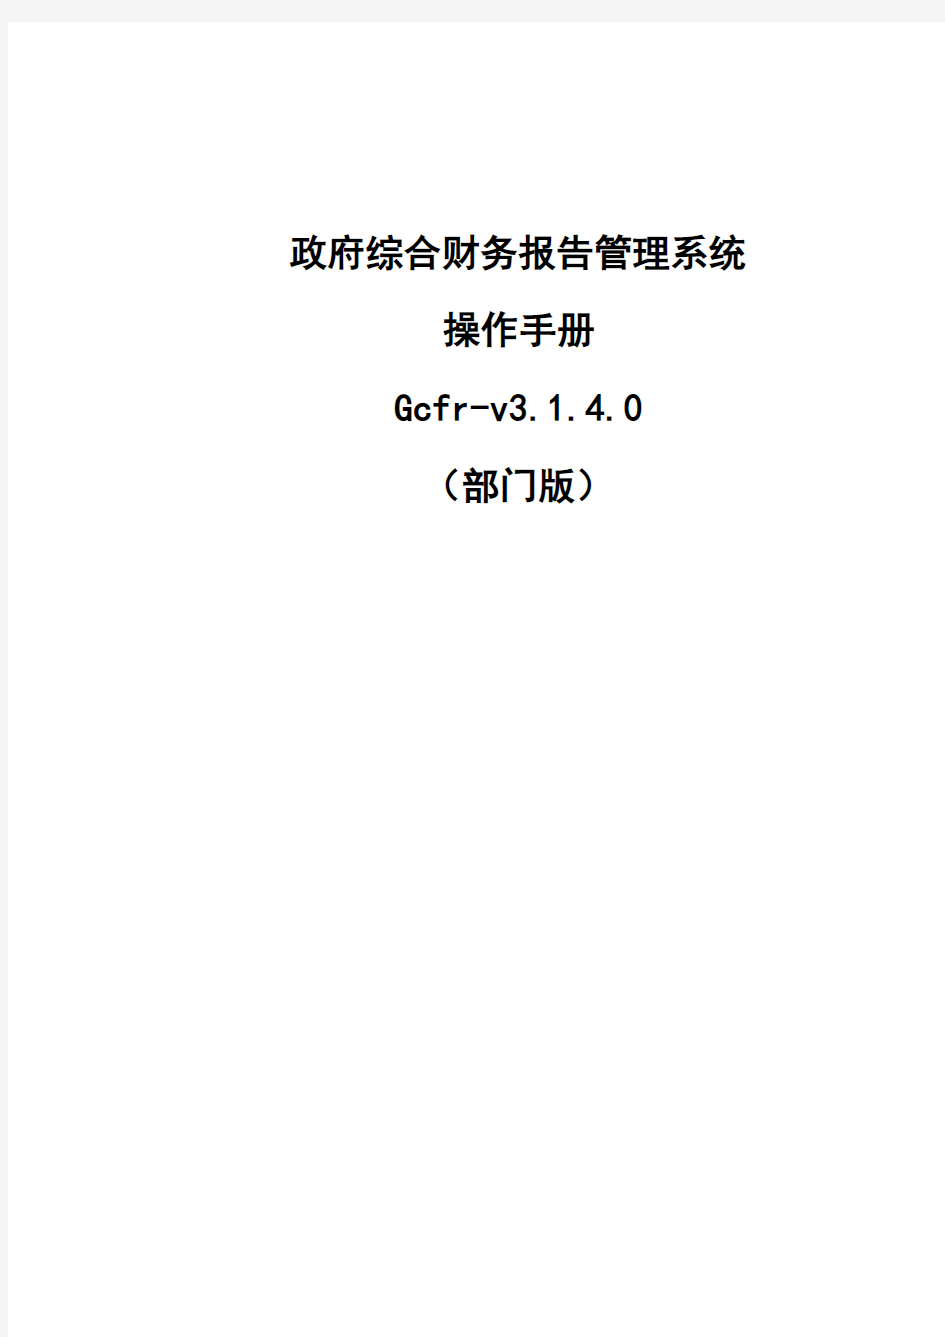 政府财务报告管理系统简易操作手册(部门版)v3.1.4.0